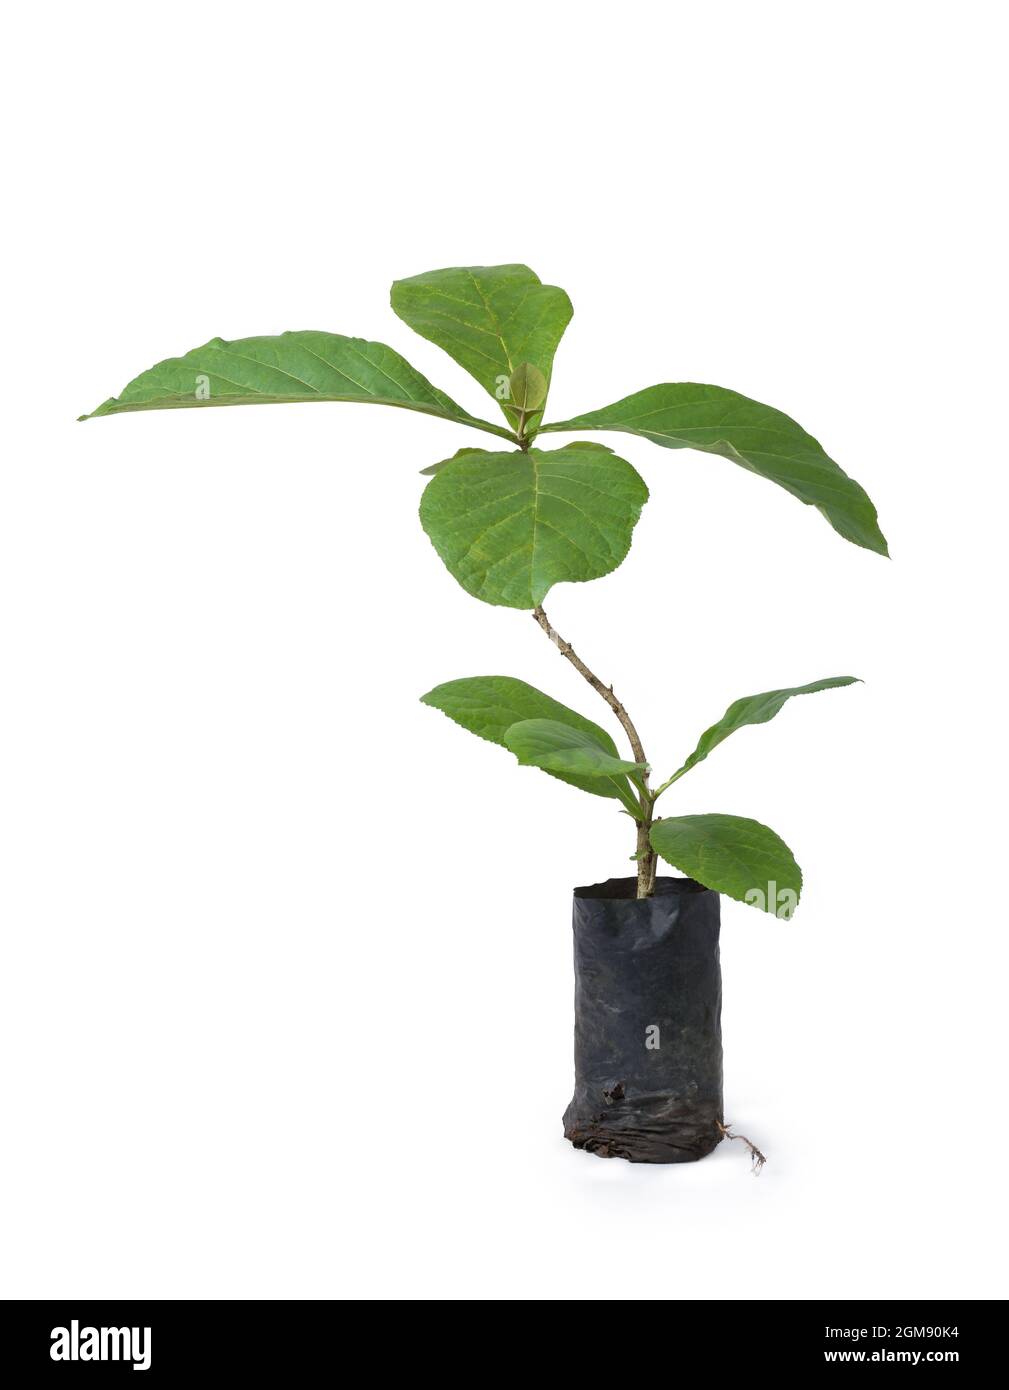 Teakpflanze, produzieren eine der wertvollsten Hölzer, tropische, Laub- und kommerziell wichtige Baumpflanze isoliert auf weißem Hintergrund Stockfoto